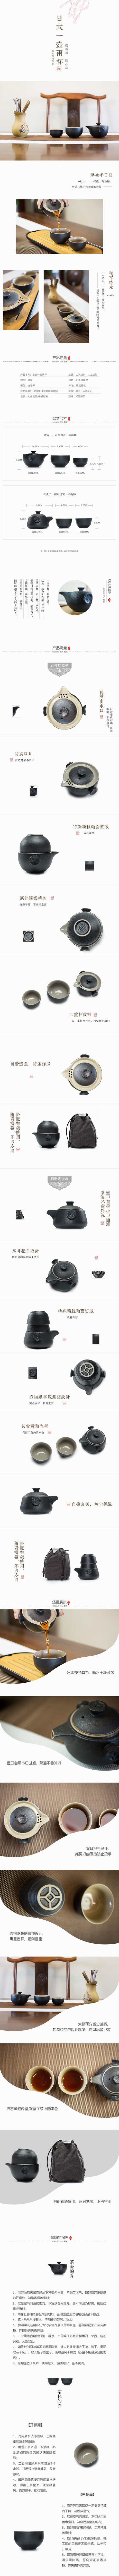 淘宝美工亚丁简约中国风日式茶具详情设计作品